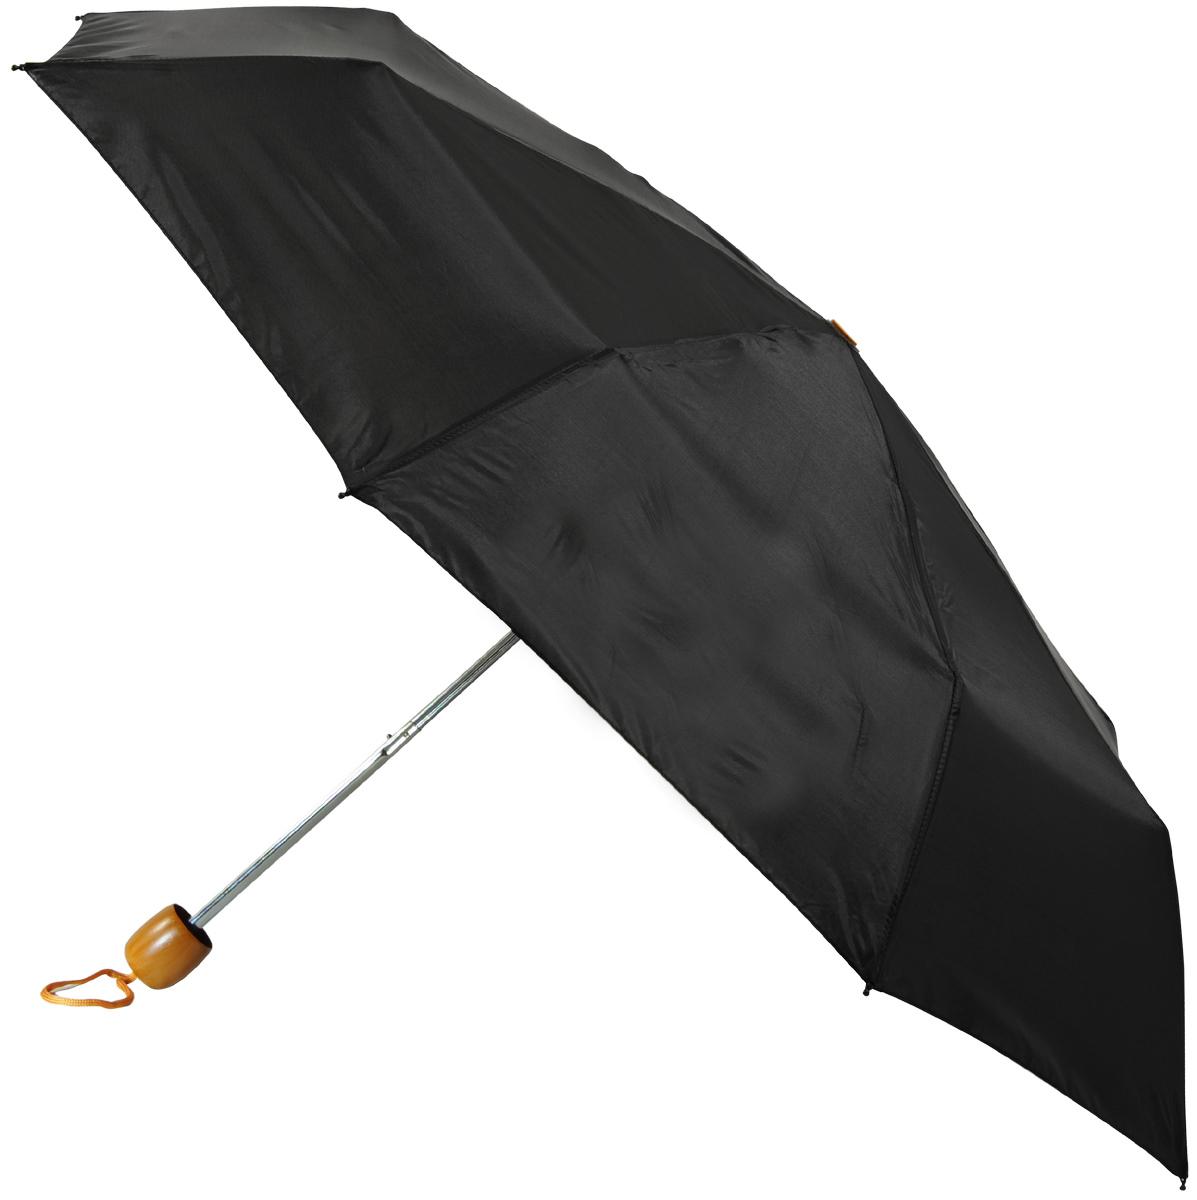  Duchess Mini Umbrella - Opens 42 